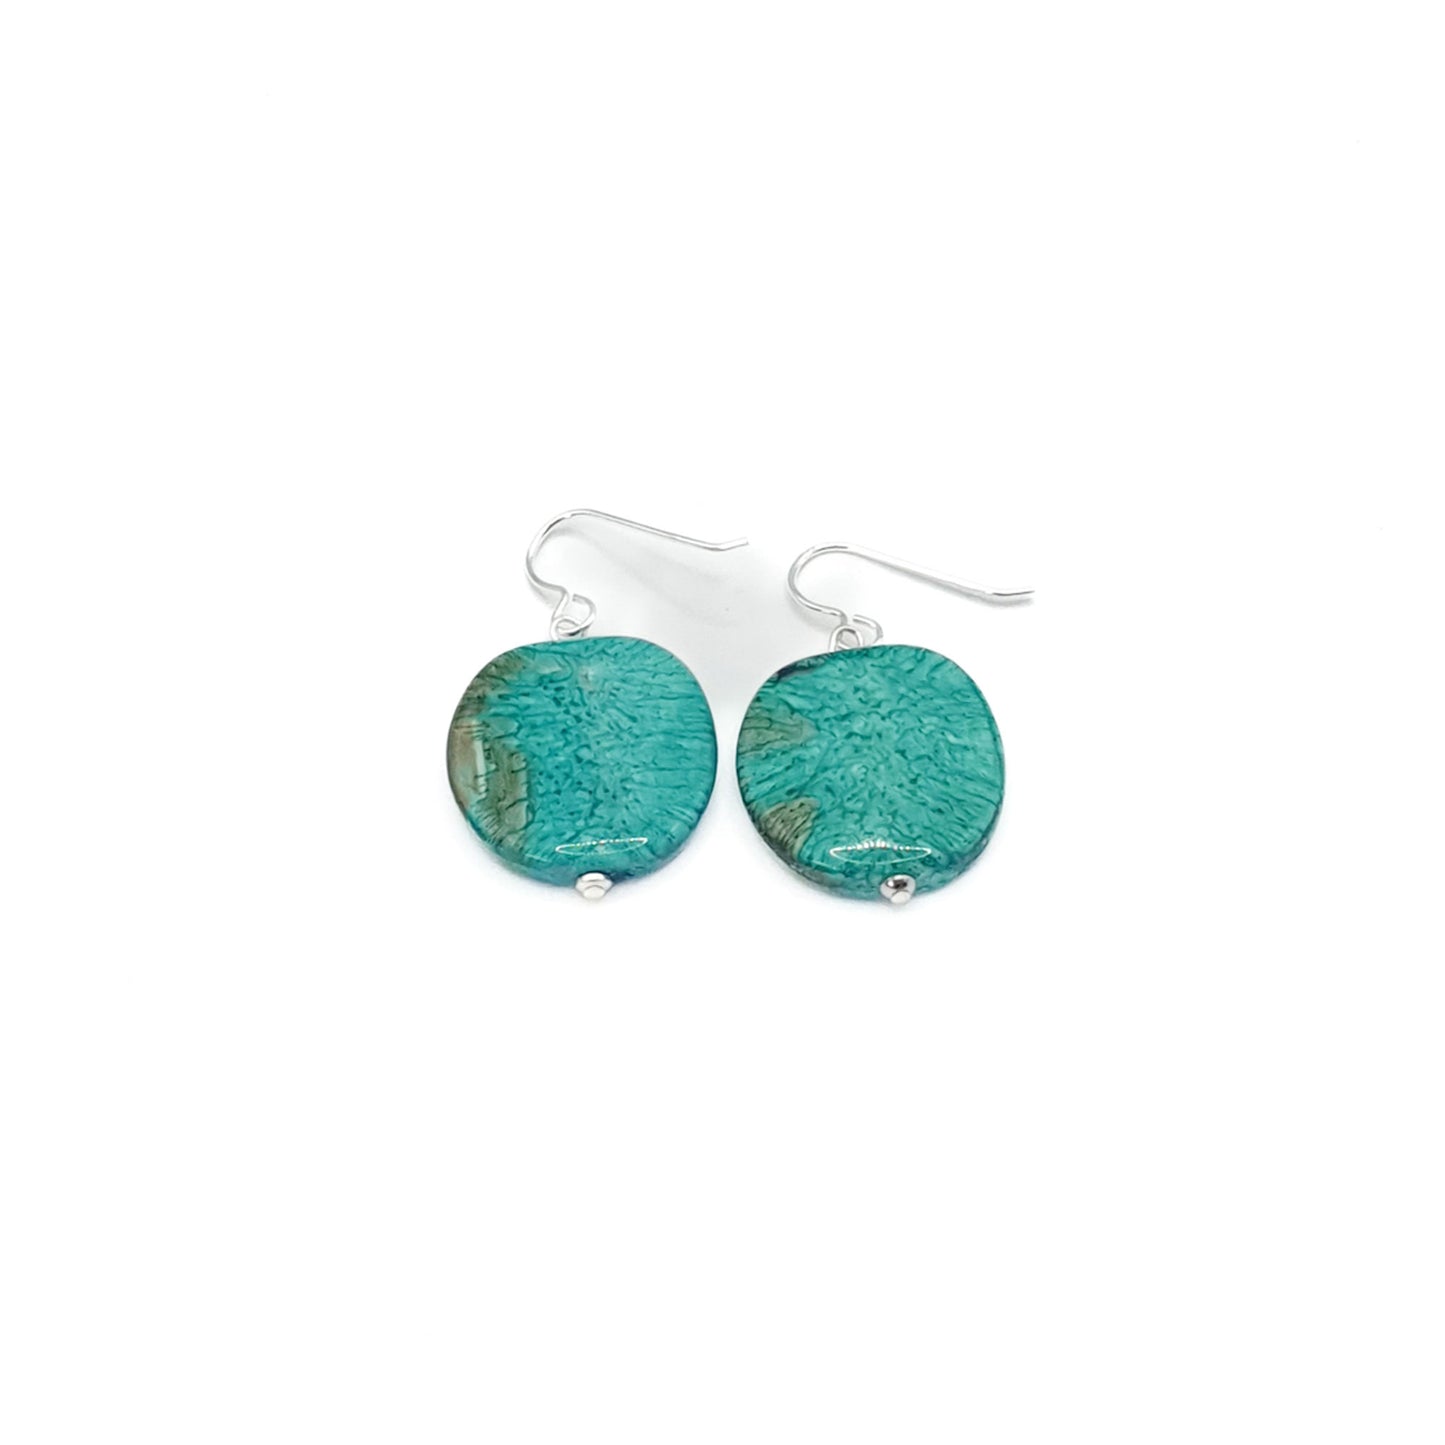 Resin pebble earrings in turquoise